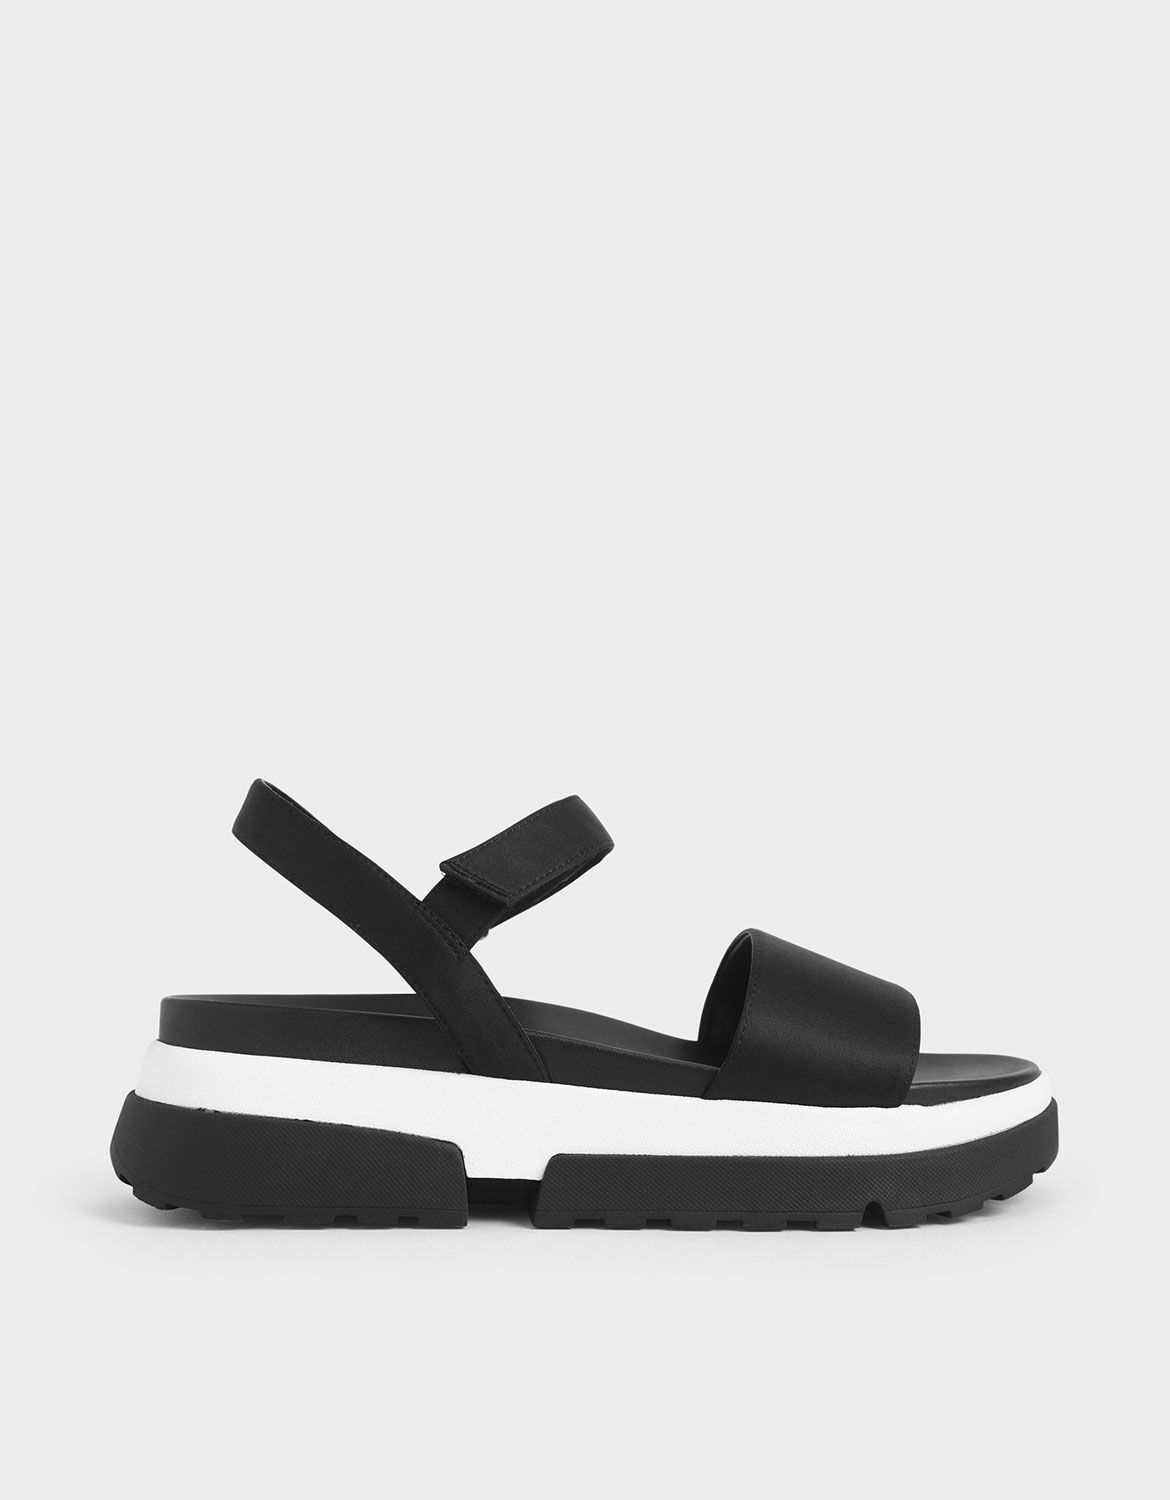 black sole sandals